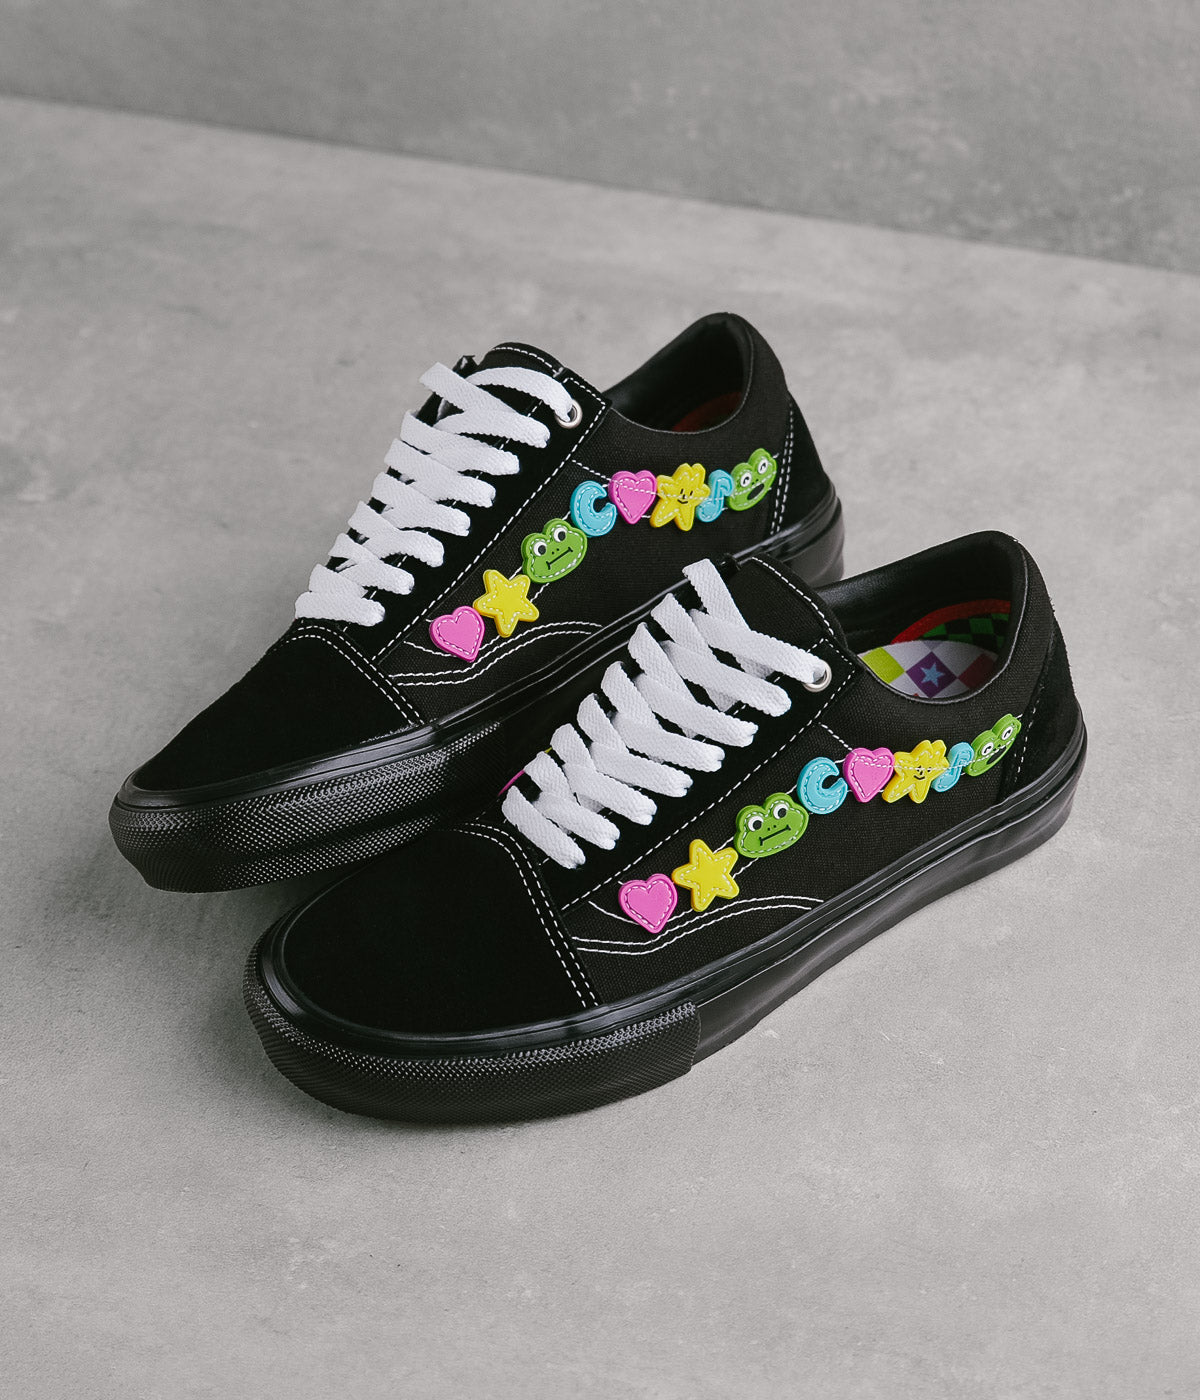 Vans x Skate Old Skool Shoes - Black / Black | Flatspot